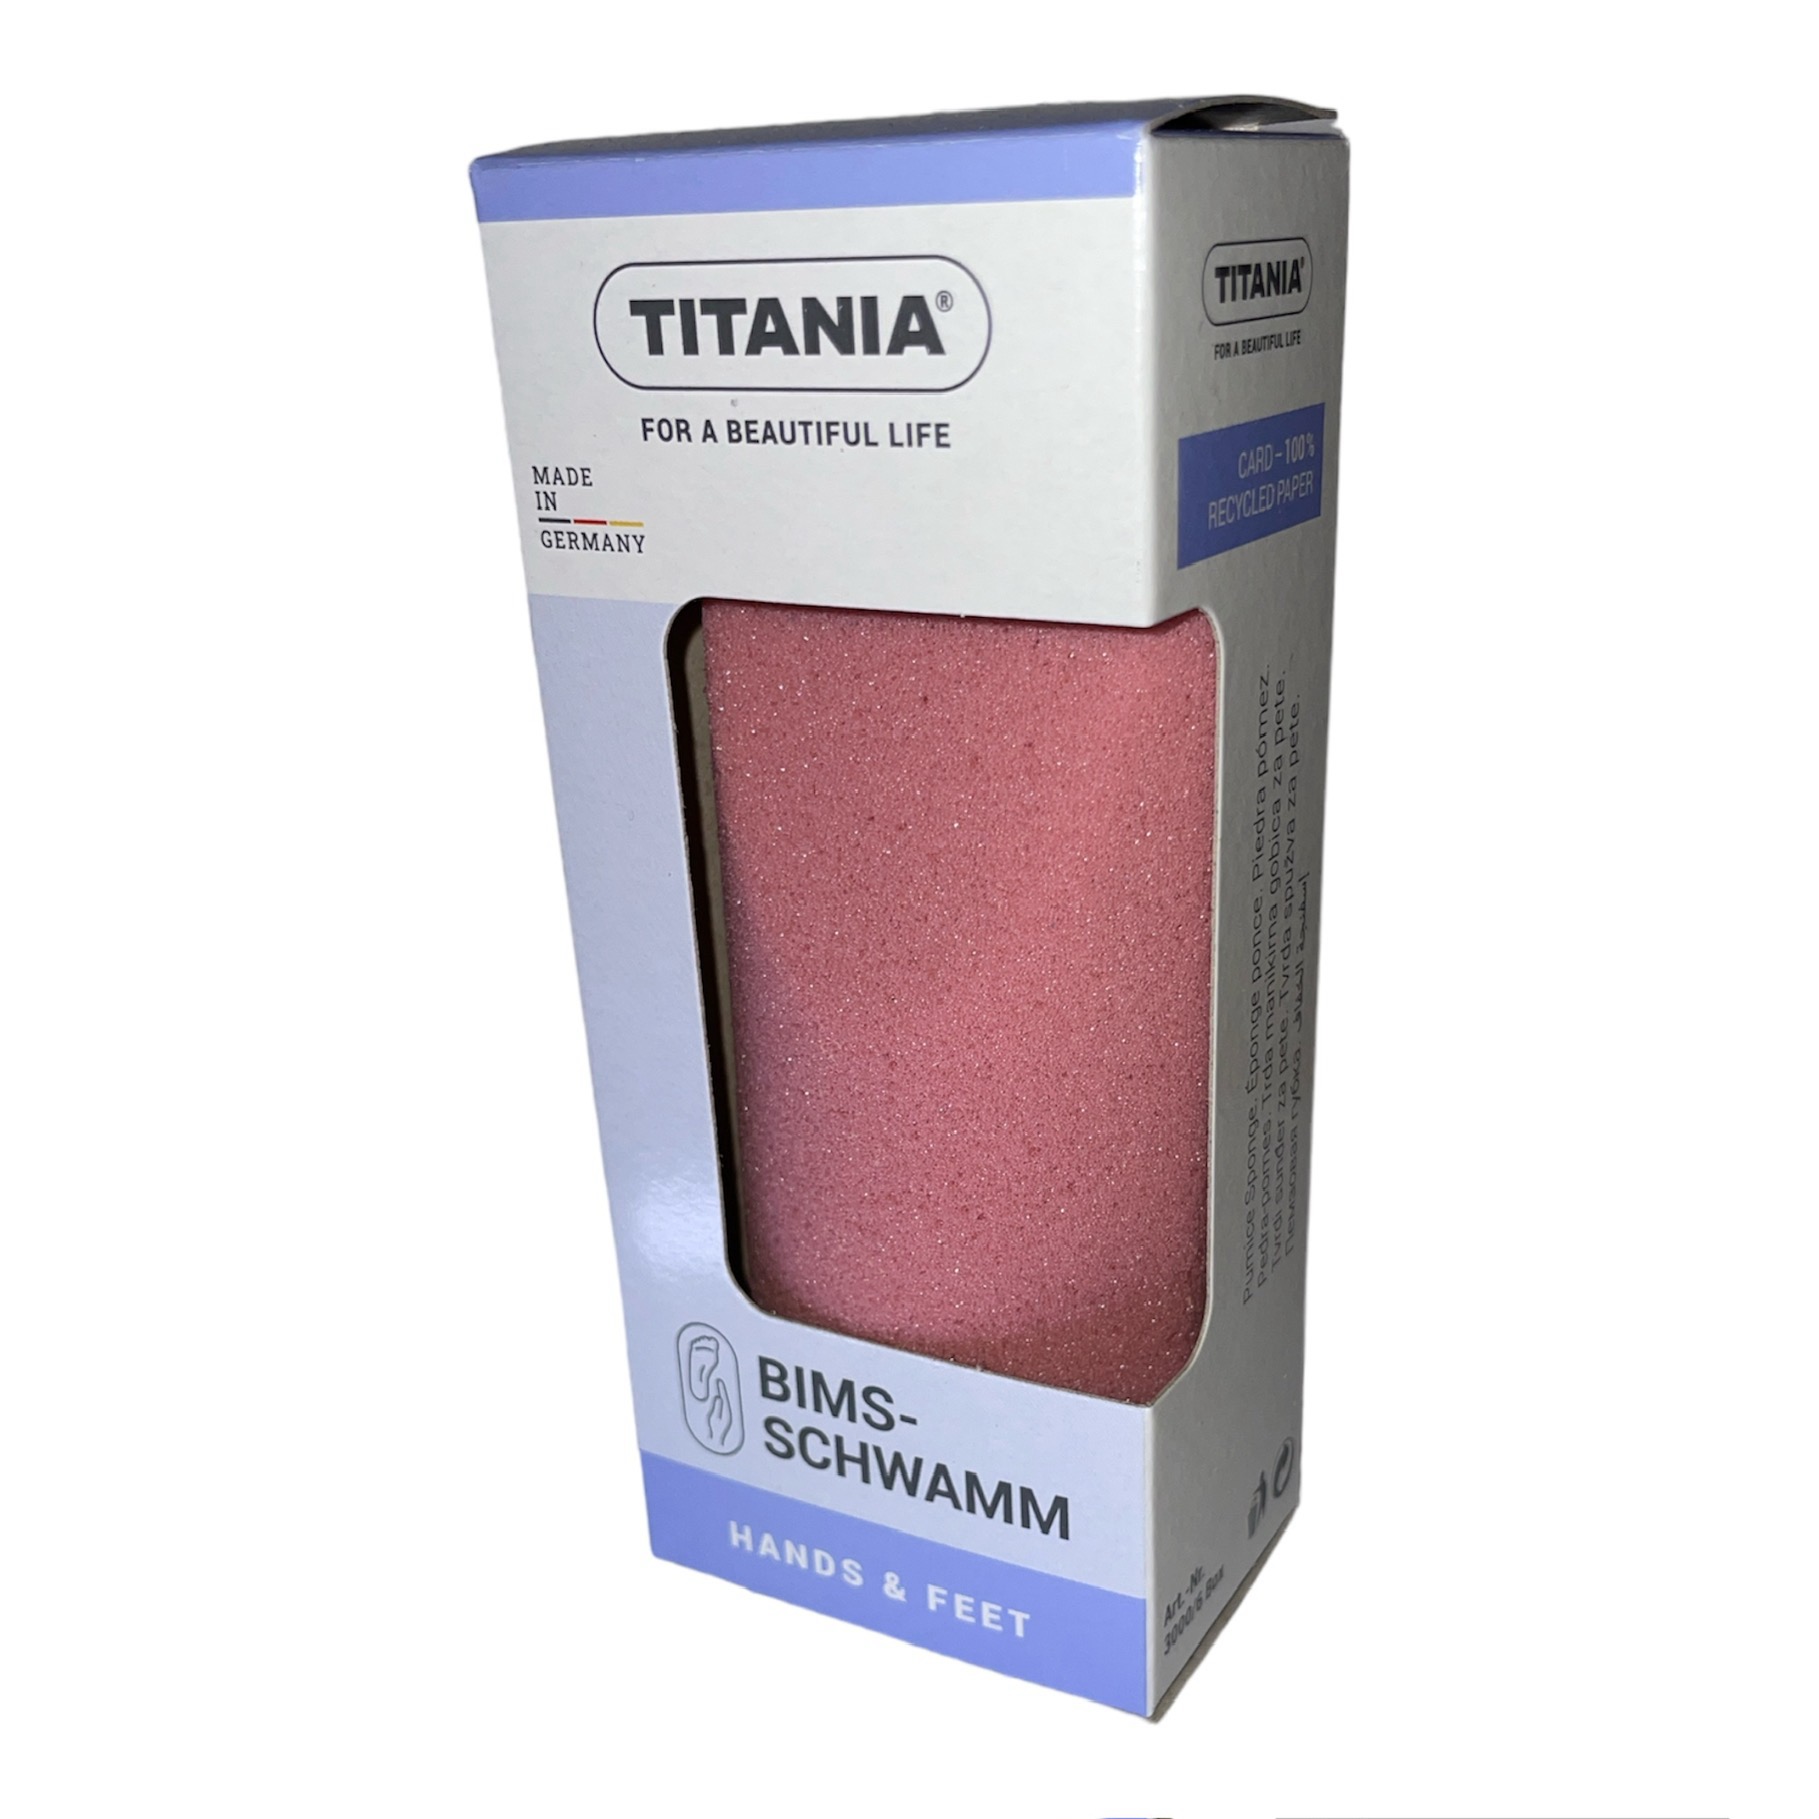 Titania pimpsten mod hård hud Pink